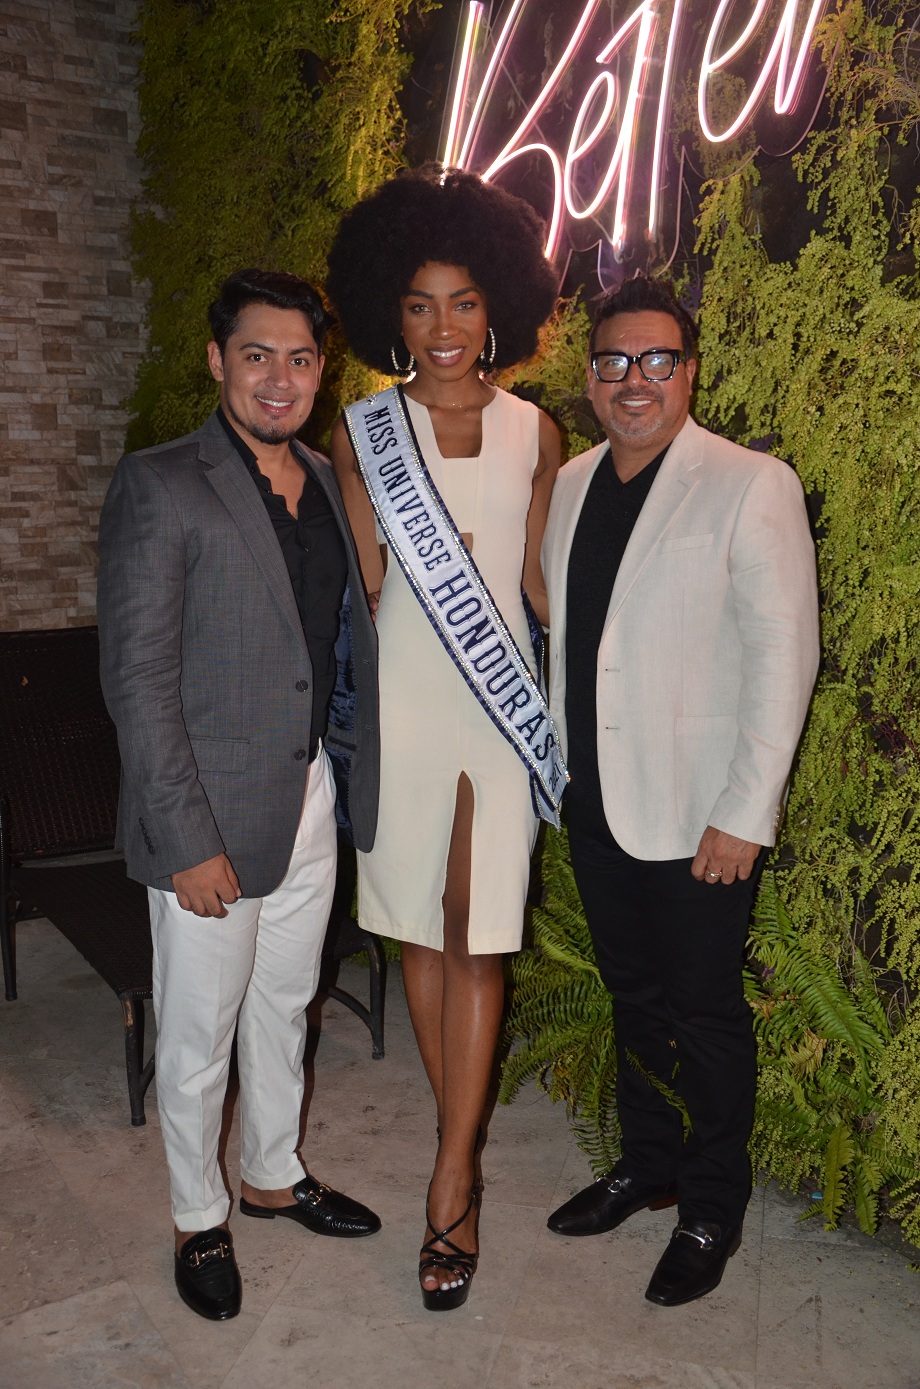 Candidatas a Miss Honduras Universo se preparan para su espectáculo de reinas de la belleza en San Pedro Sula